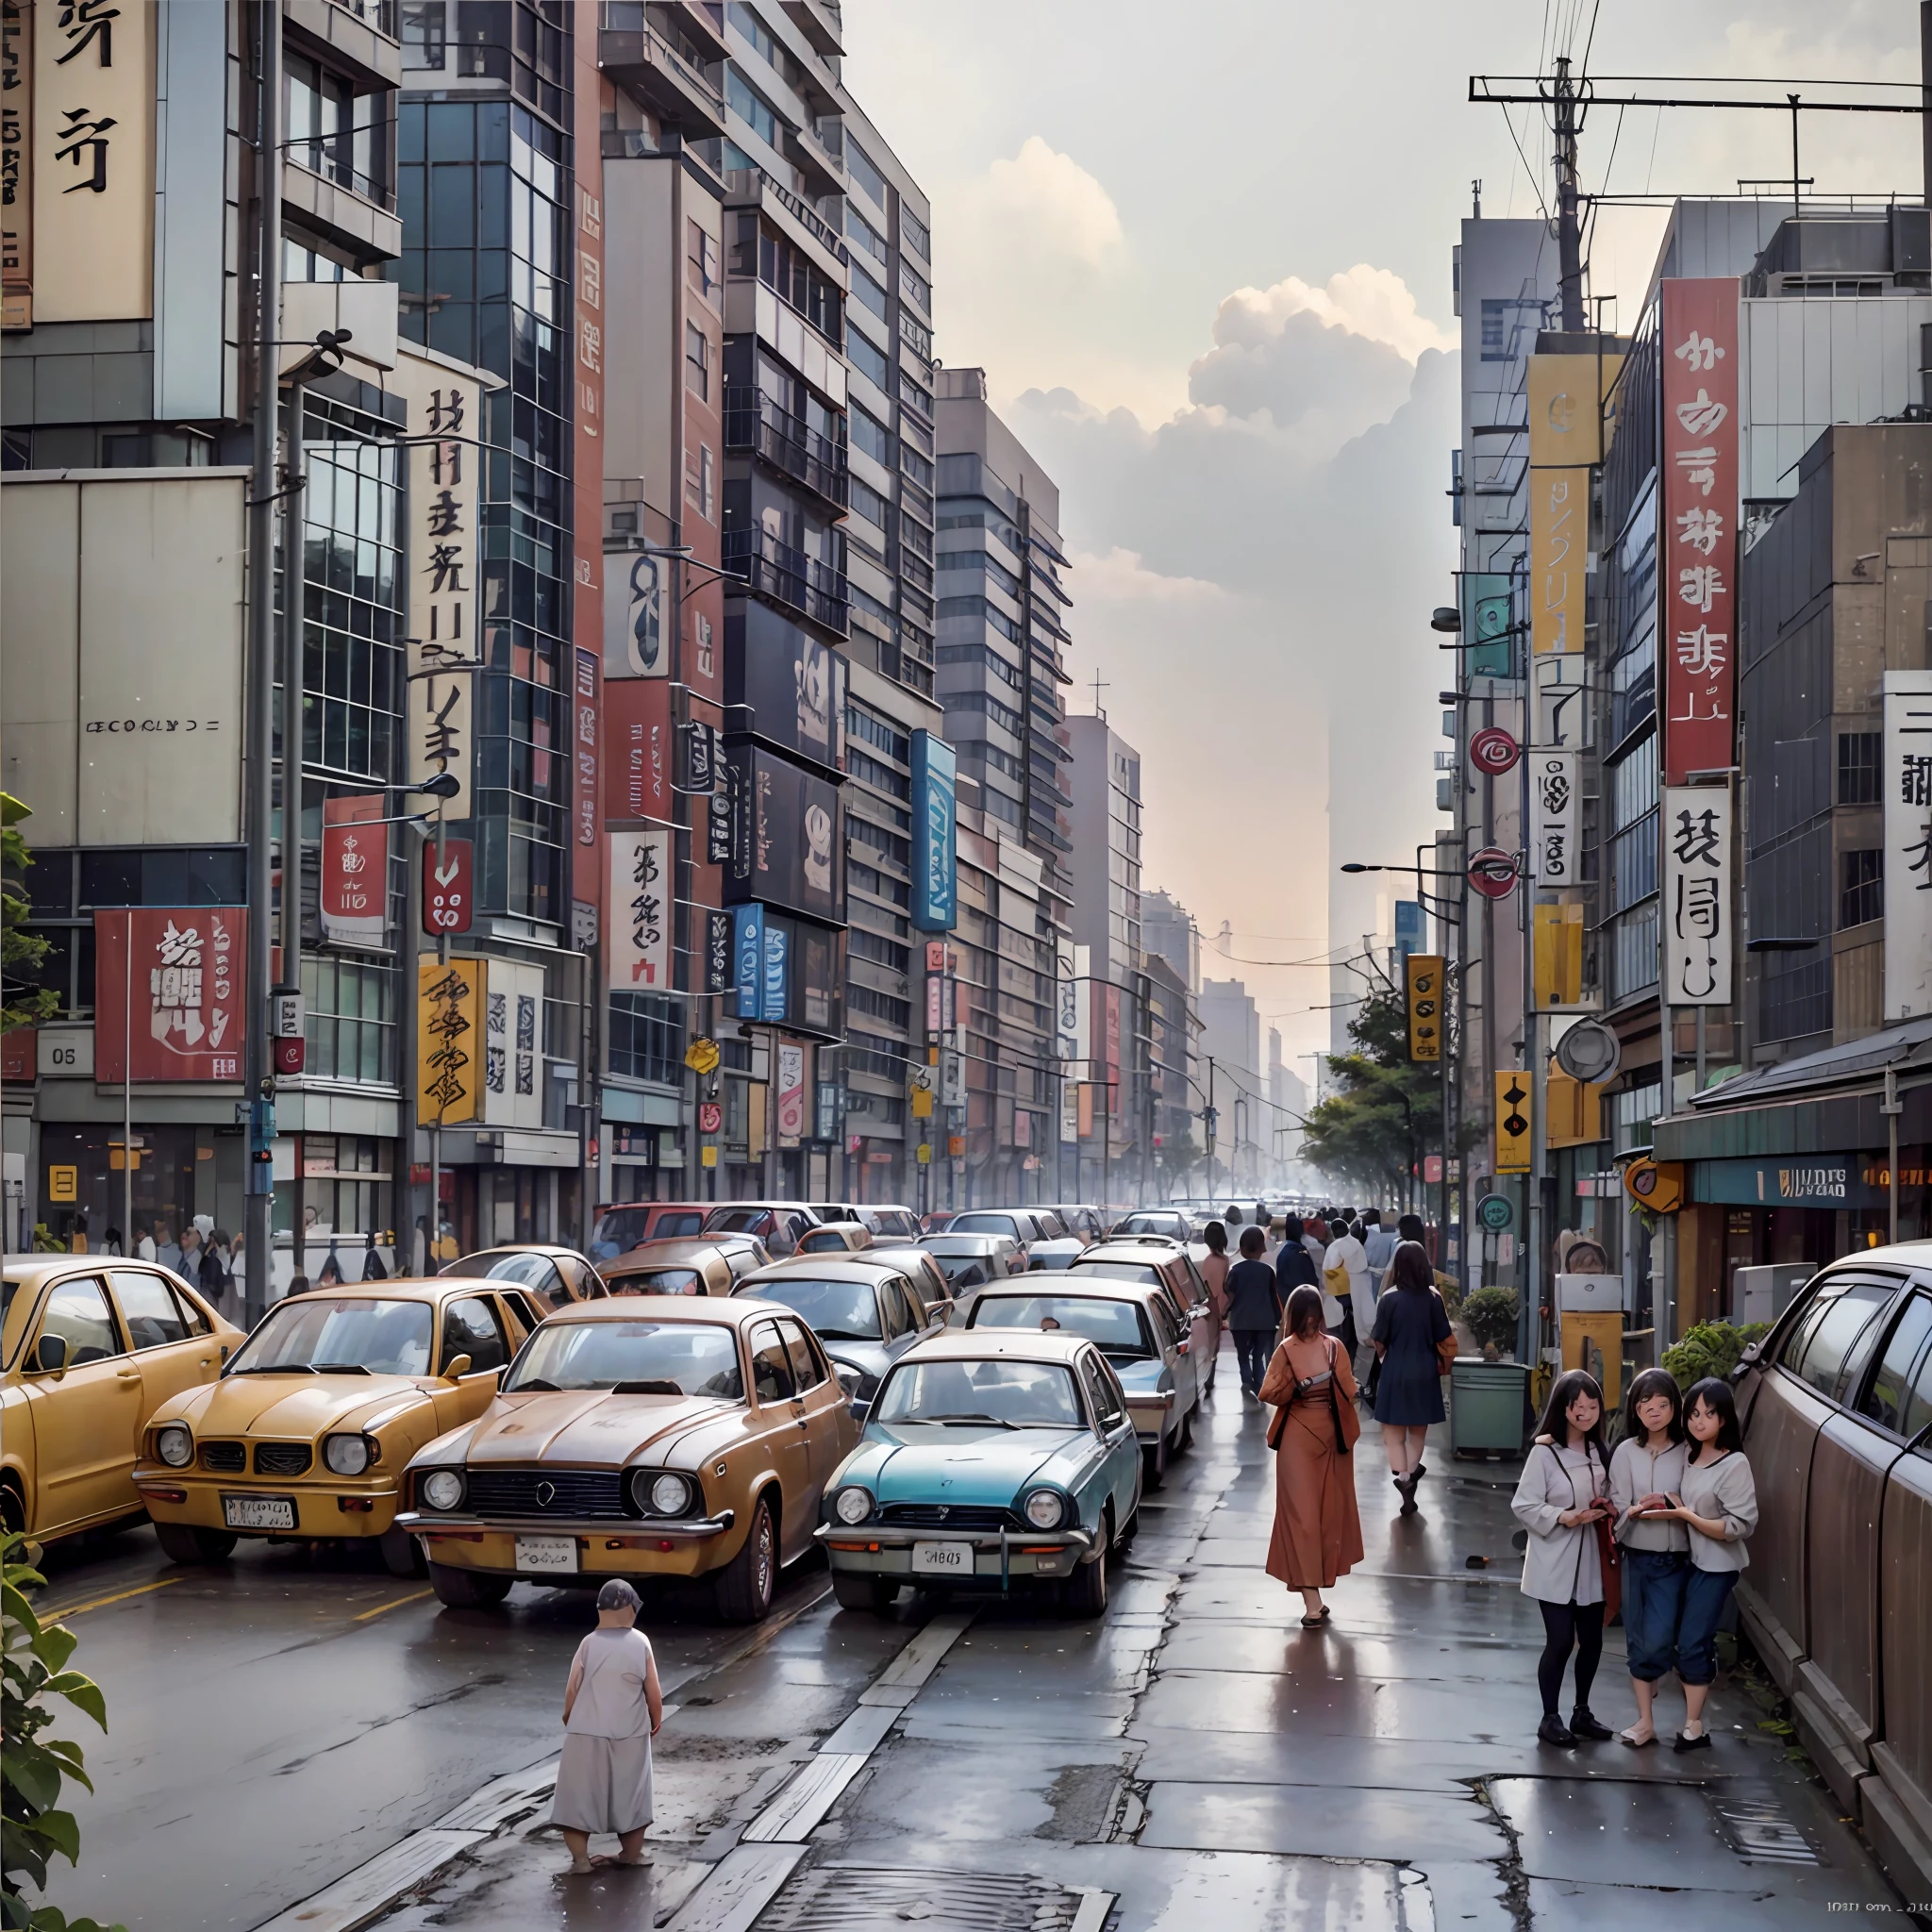 مدينة مستقبلية كما تبدو من السبعينيات, صورة طوكيو, الناس في عام 1970, الطباعة في السبعينيات, حنين, كلاسيكي, صورة ملونة, صورة واقعية, جودة صورة عالية, غائم, متسخ, الصدأ, تعبير واقعي للغاية, --تلقائي --s2